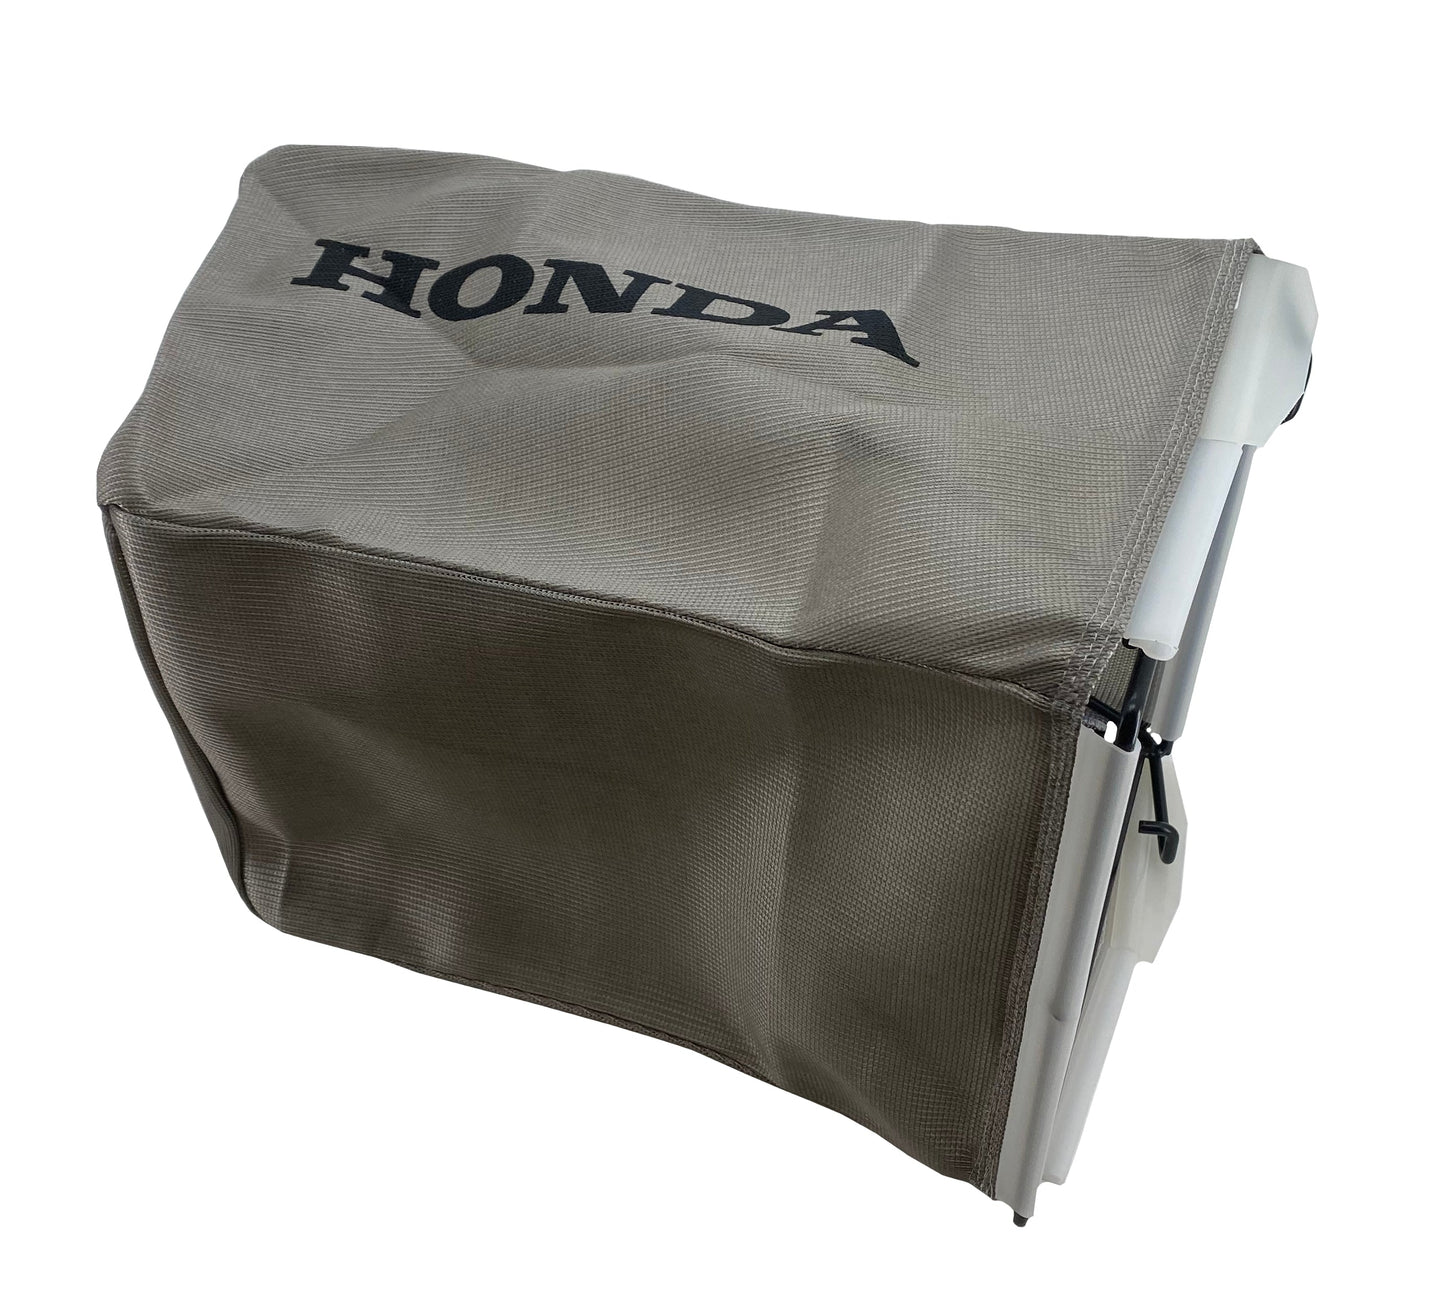 Honda Original Equipment Fabric Grass Bag & Bag Frame Set - 81320-VG4-A10 & 81330-VG4-020